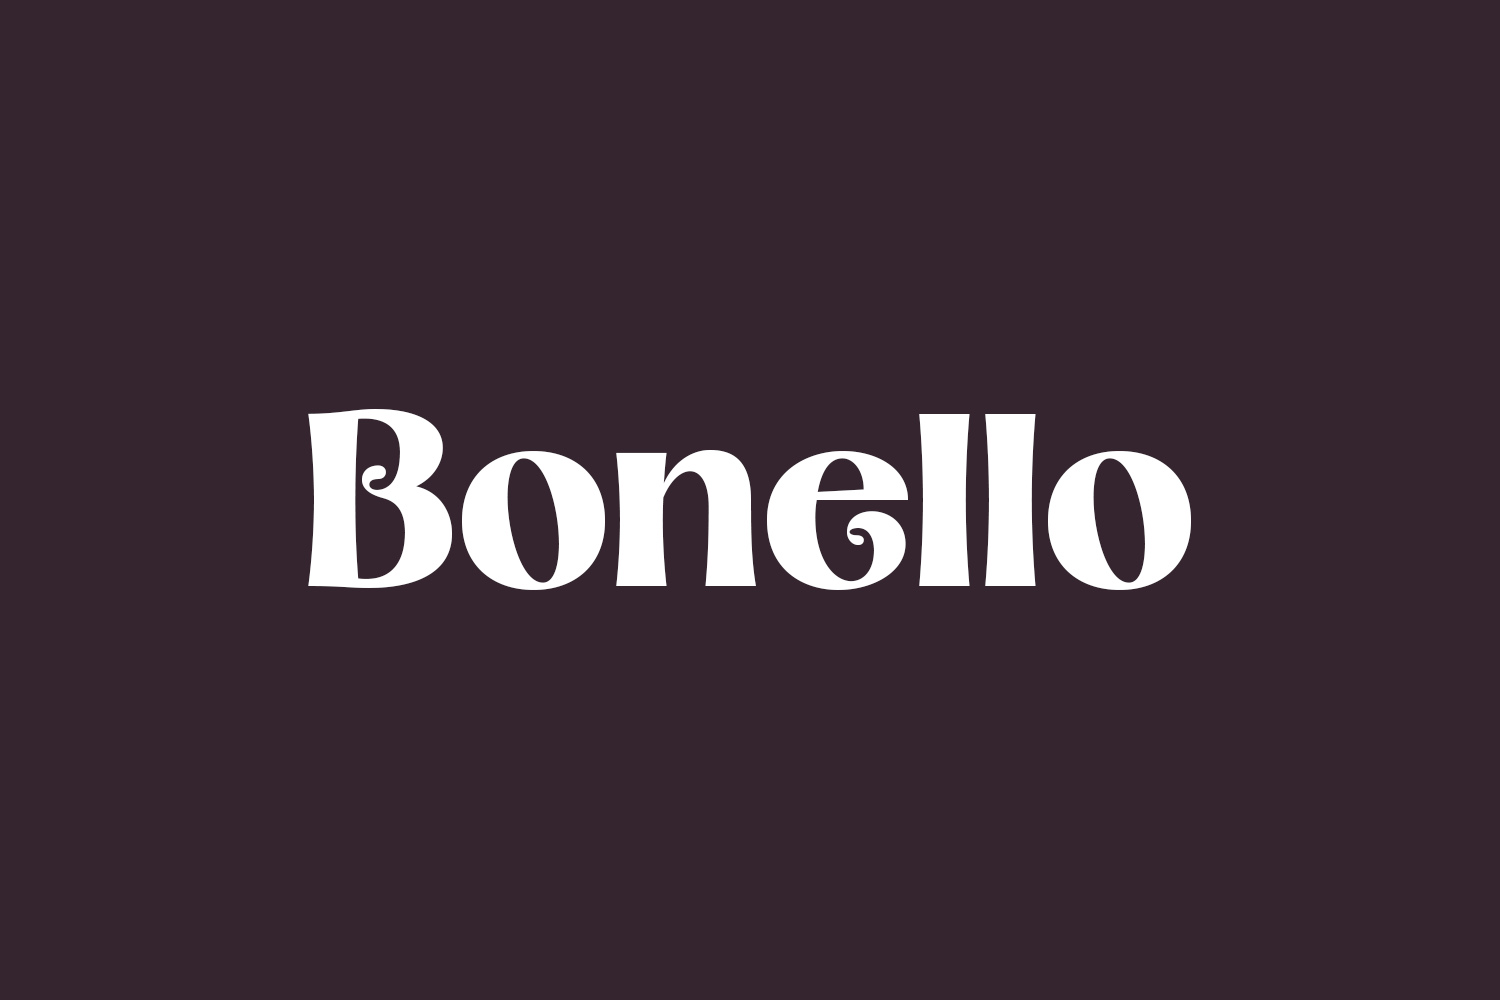 Bonello Free Font